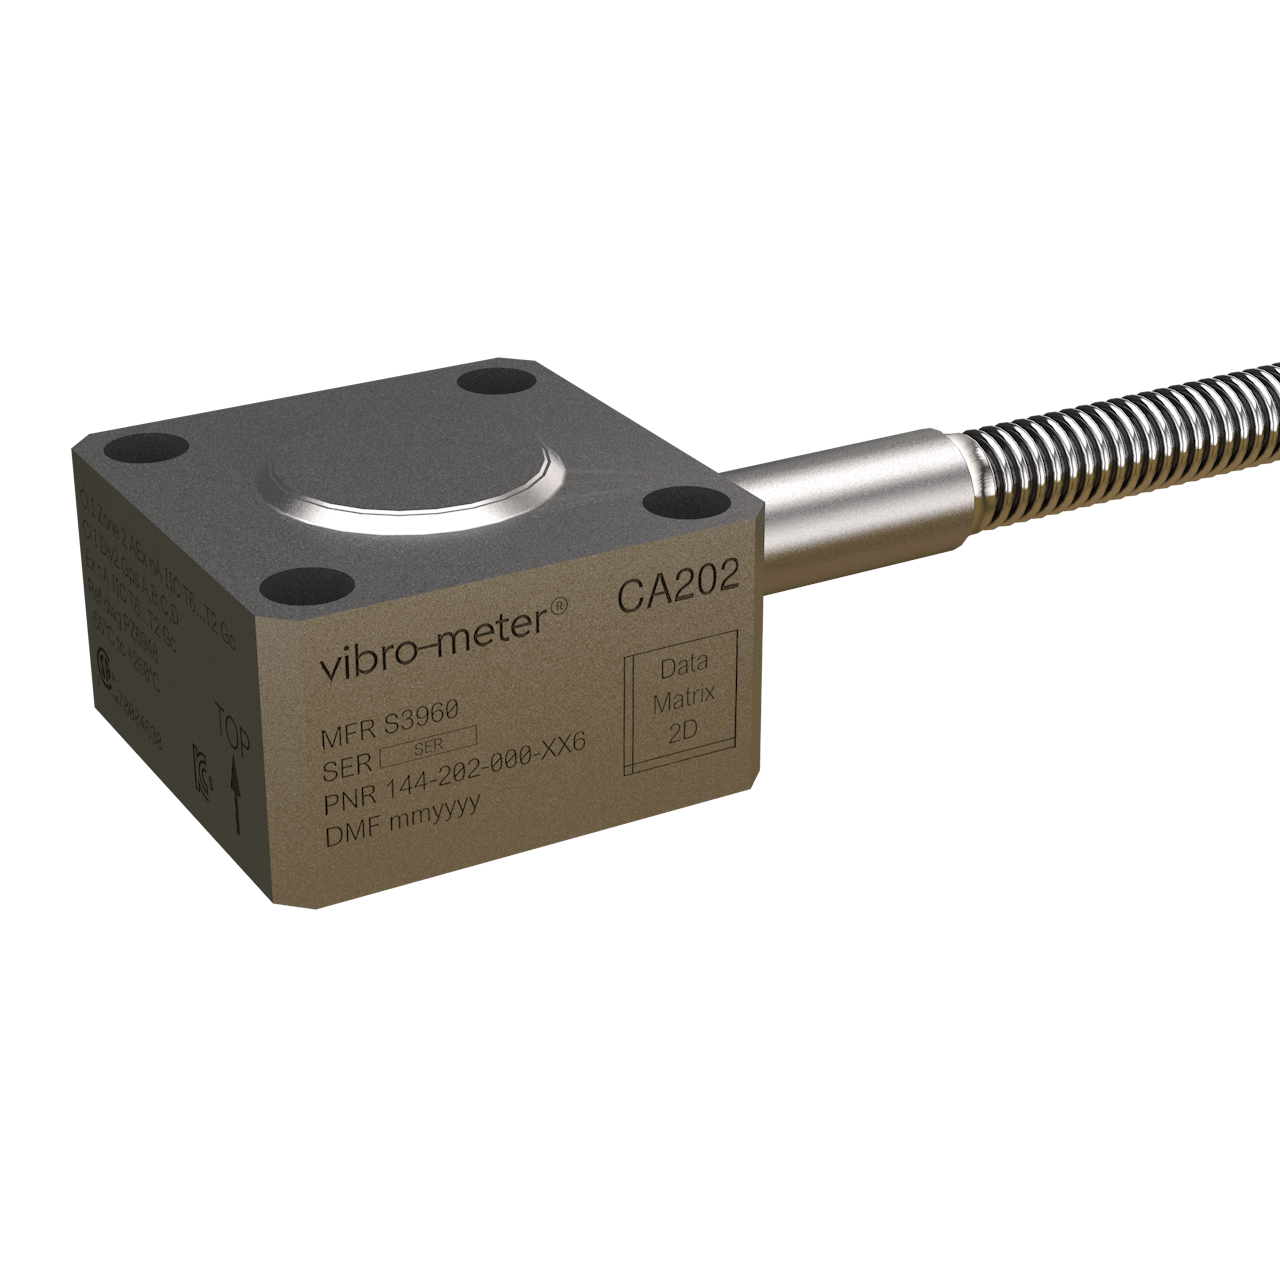 vertegenwoordiger vertaler Klant CA202 piezoelectric accelerometer - Vibro-meter Catalogue